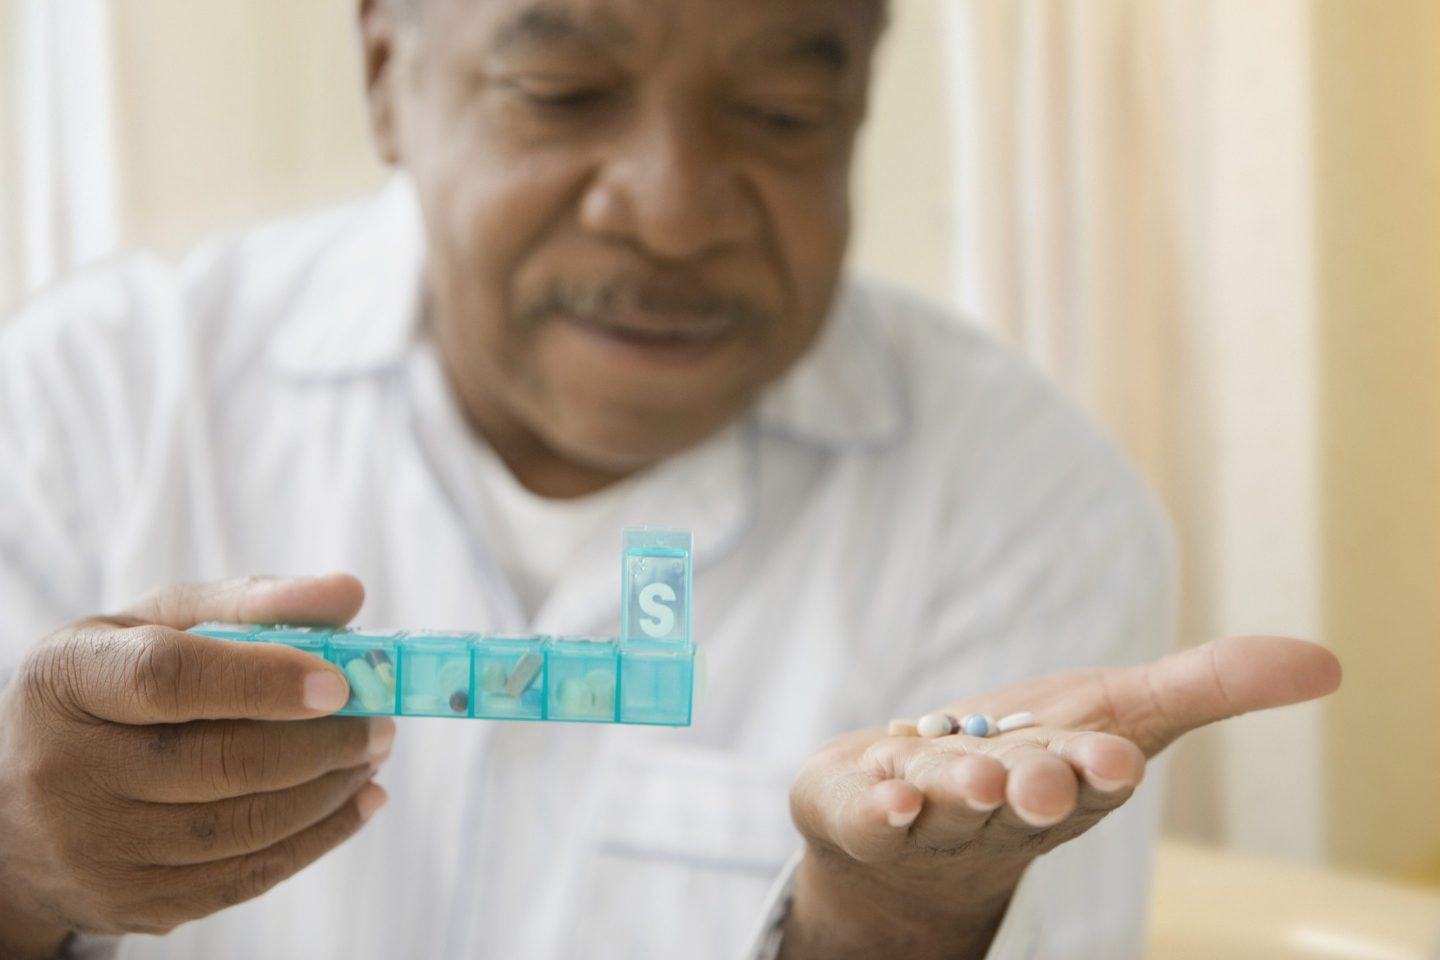 Senior man holding several prescription medications